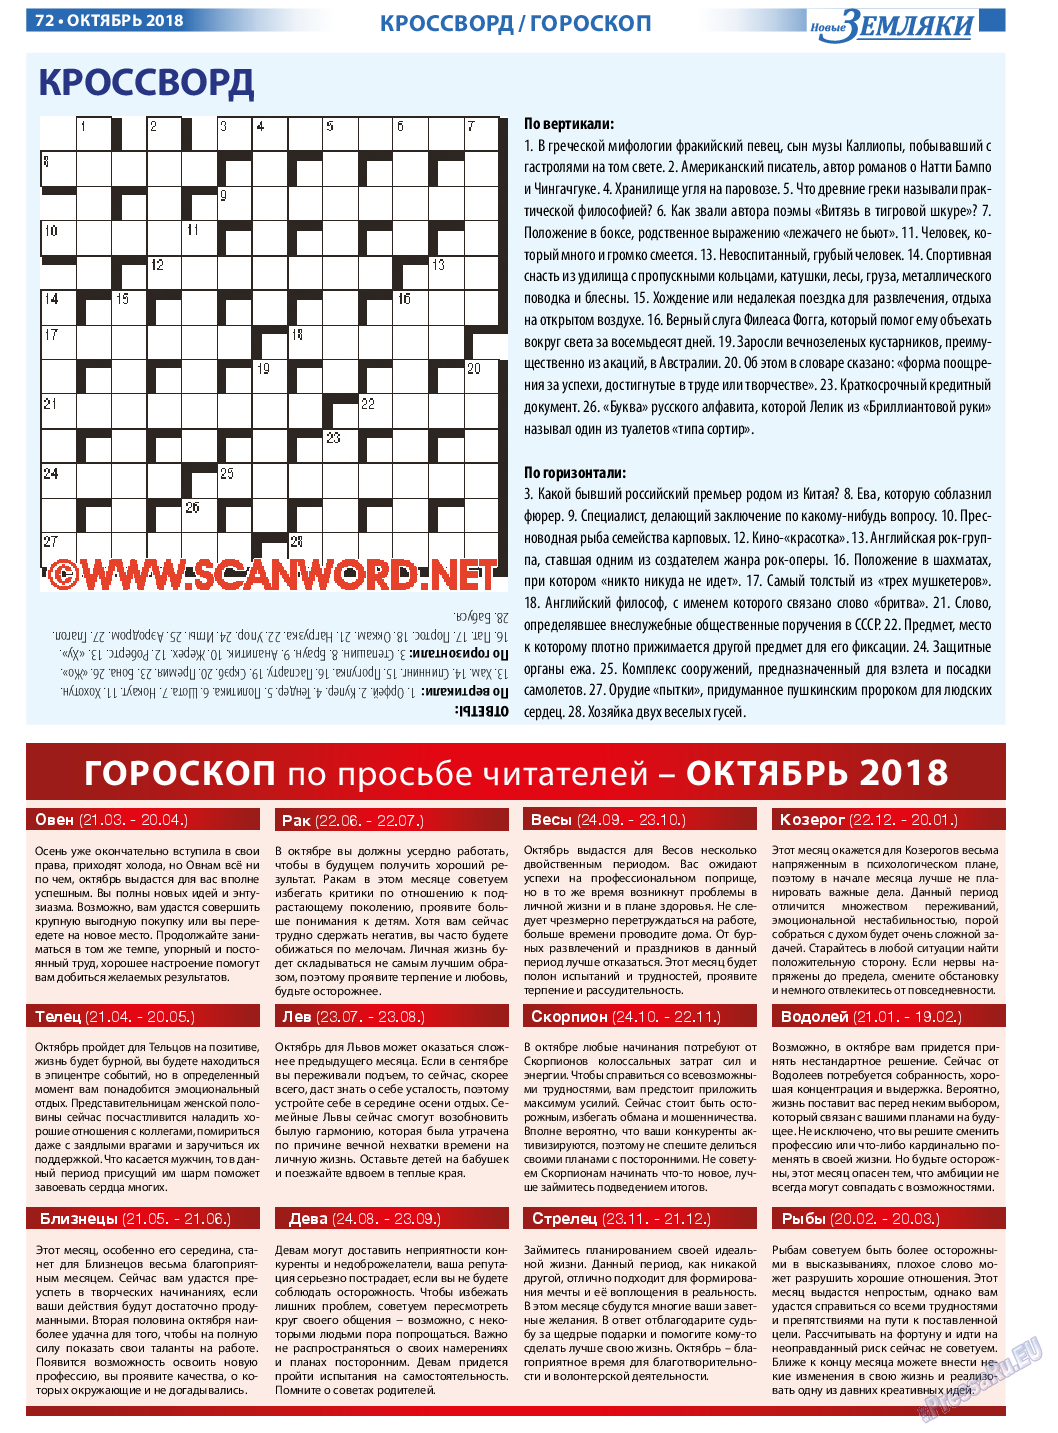 Новые Земляки, газета. 2018 №10 стр.72